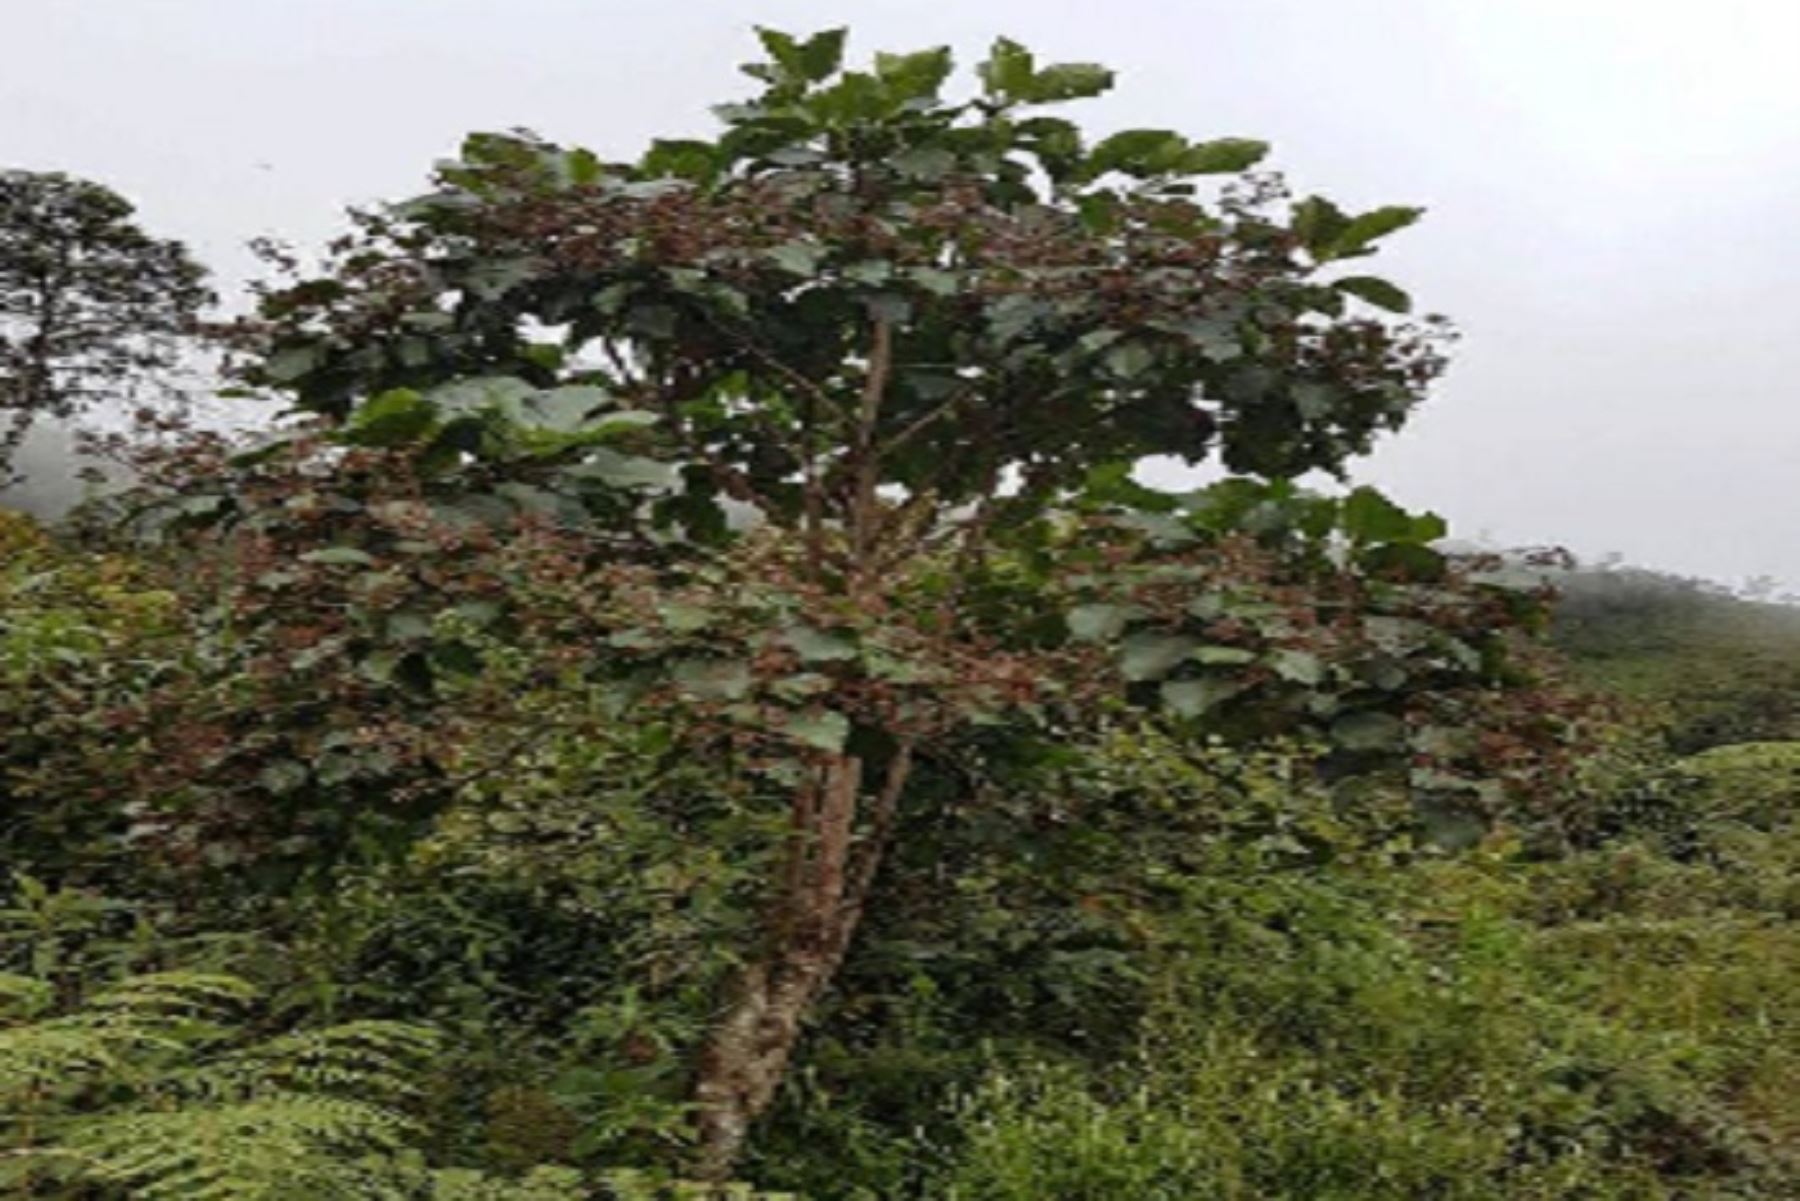 INIA descifra el genoma cloroplastiadal del emblemático árbol de la quina. El hallazgo permitirá desarrollar nuevas variedades con alto valor genético. ANDINA/Difusión